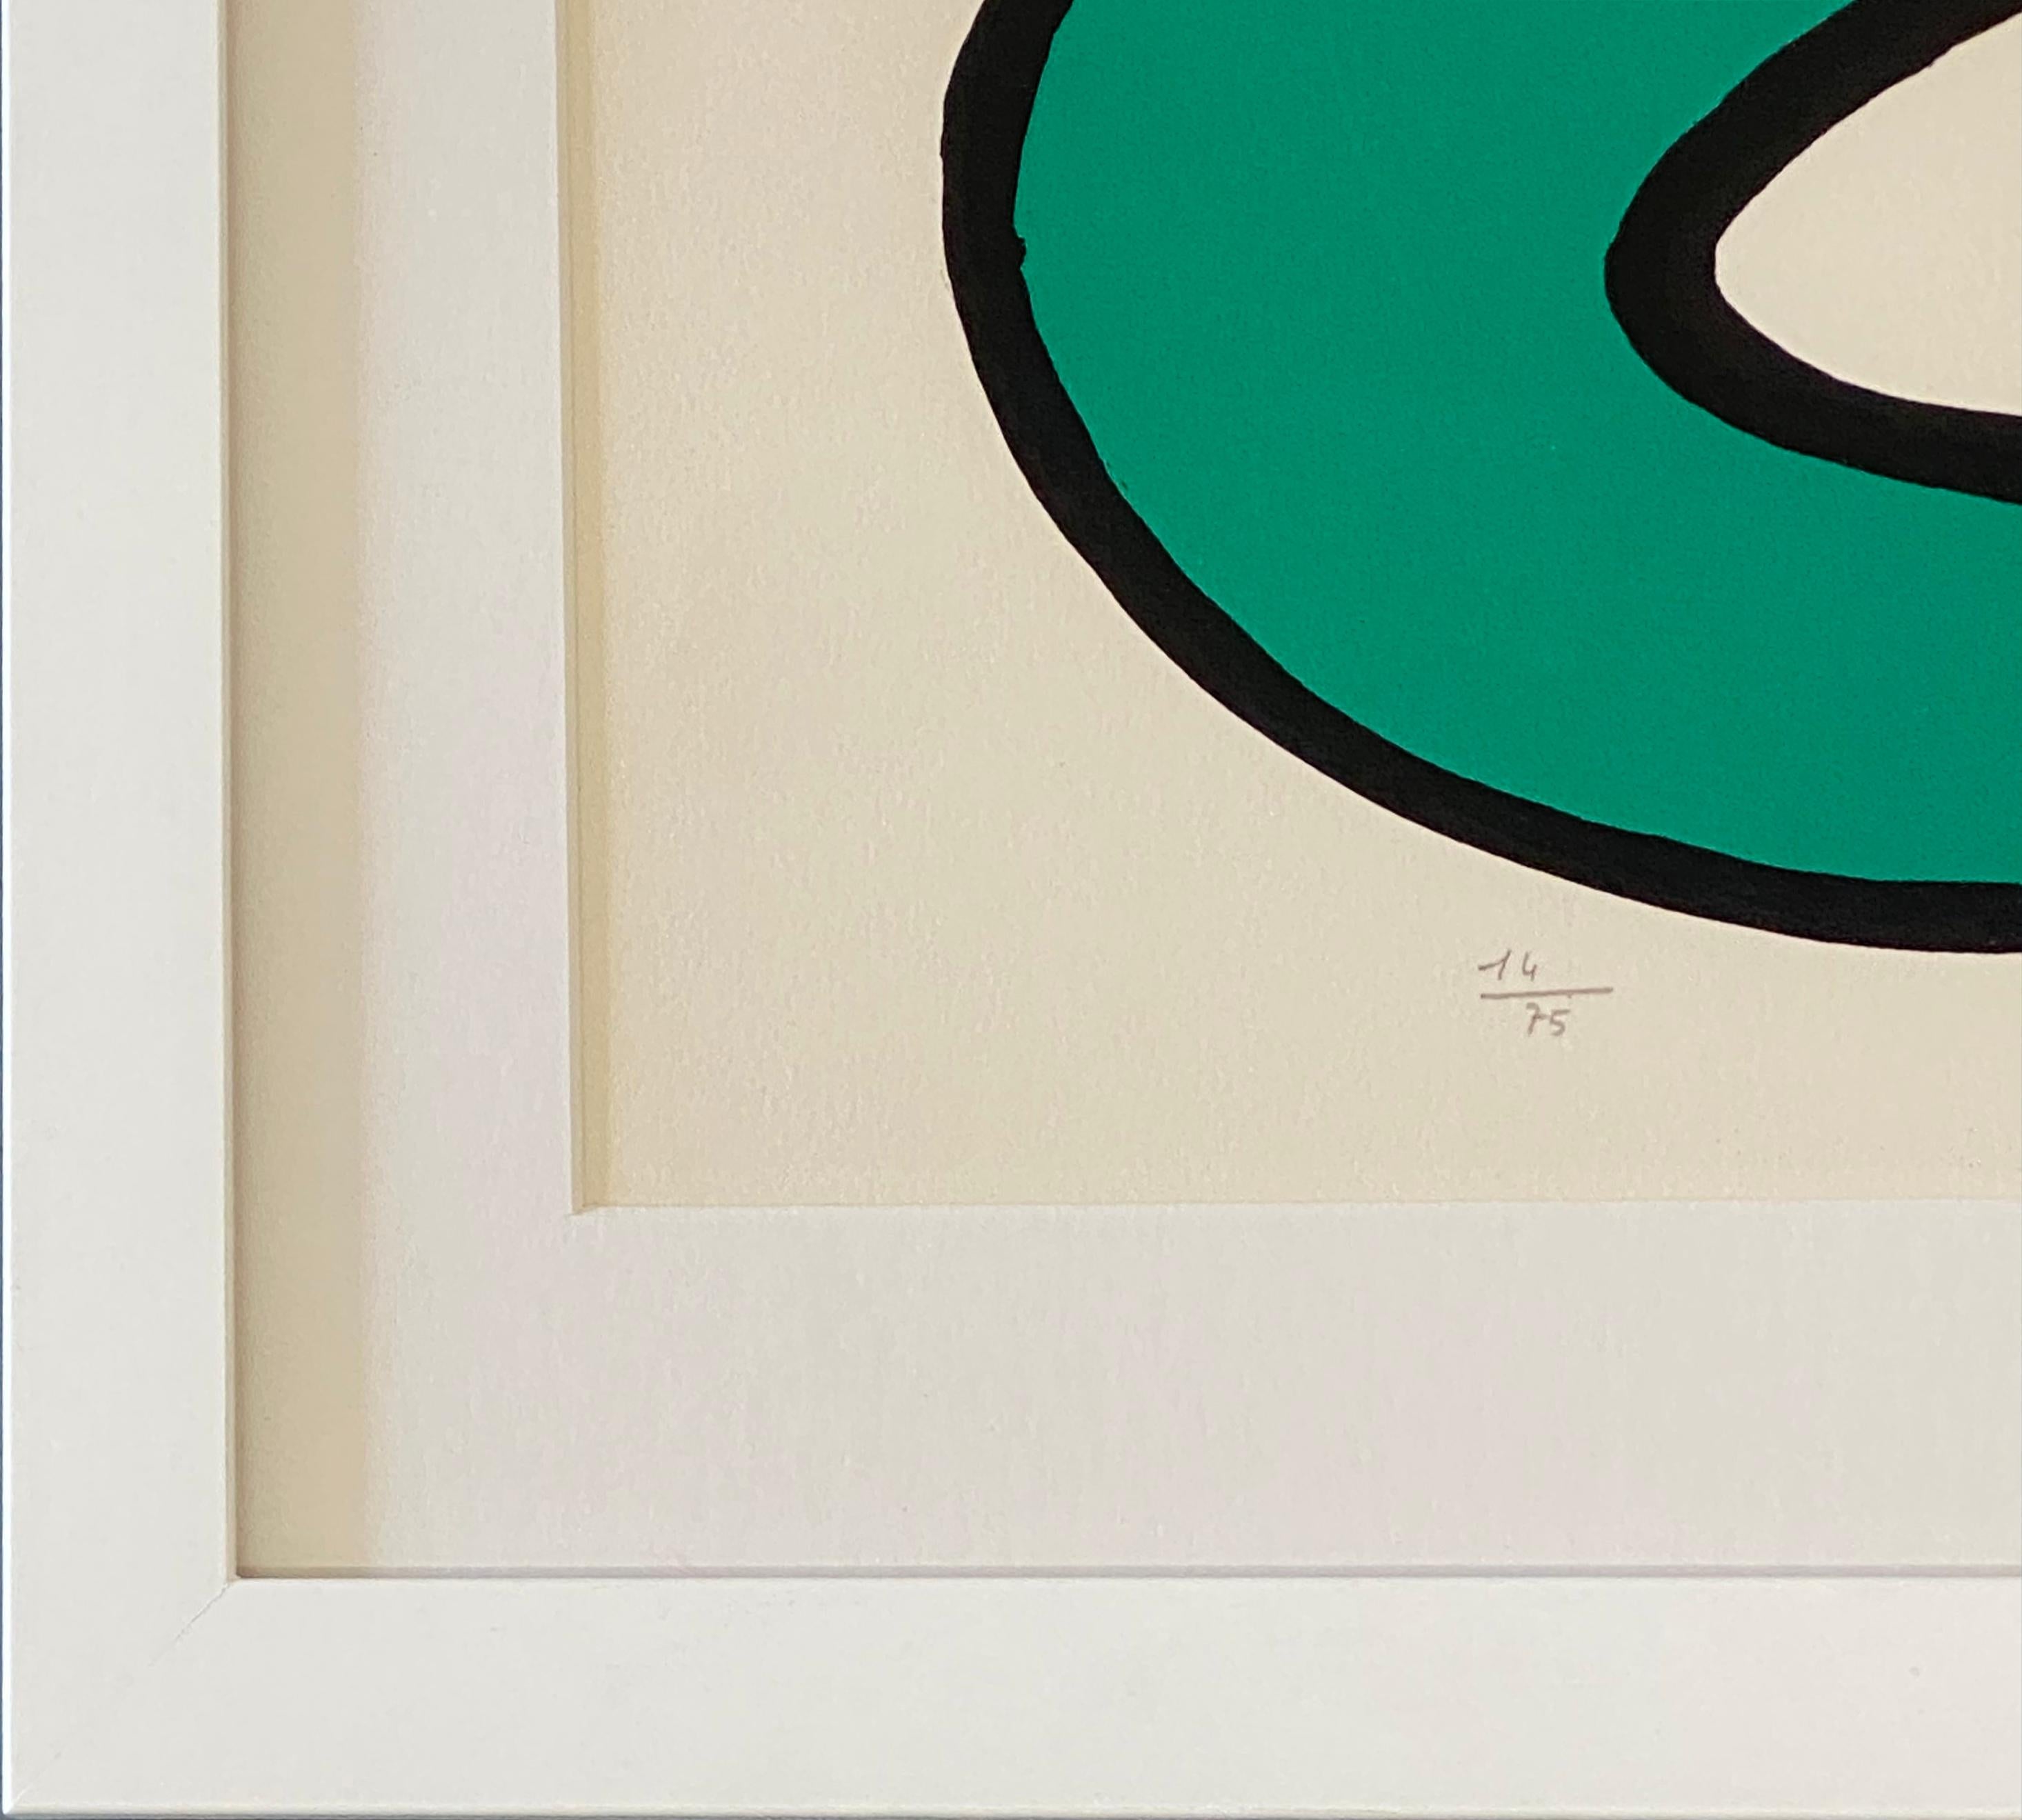 Couleurs au Choix - Contemporary Print by Alexander Calder